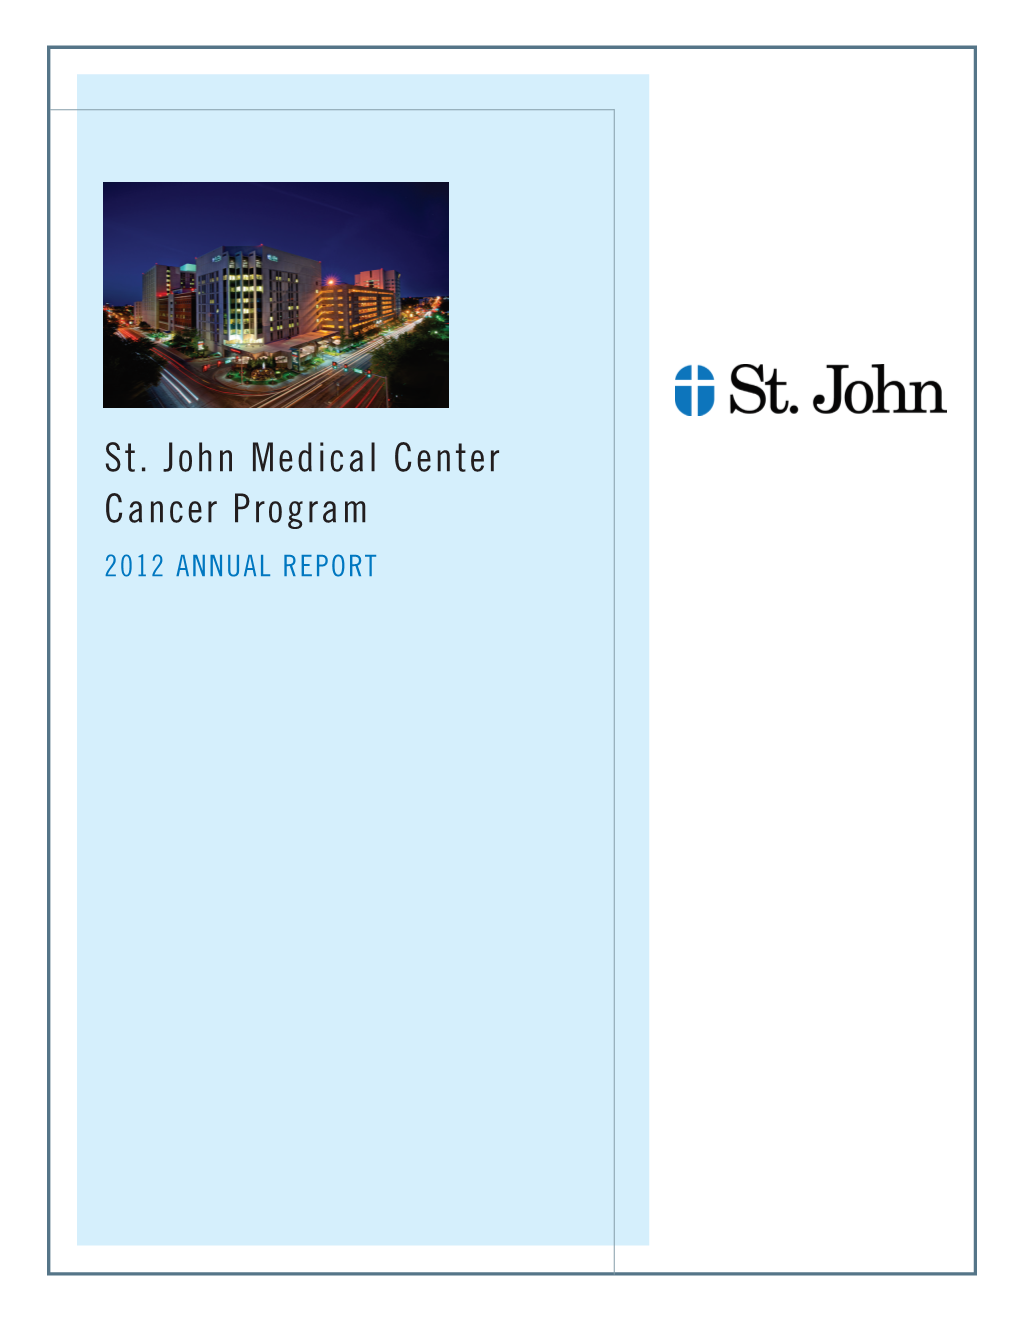 St. John Medical Center Cancer Program 2012 ANNUAL REPORT